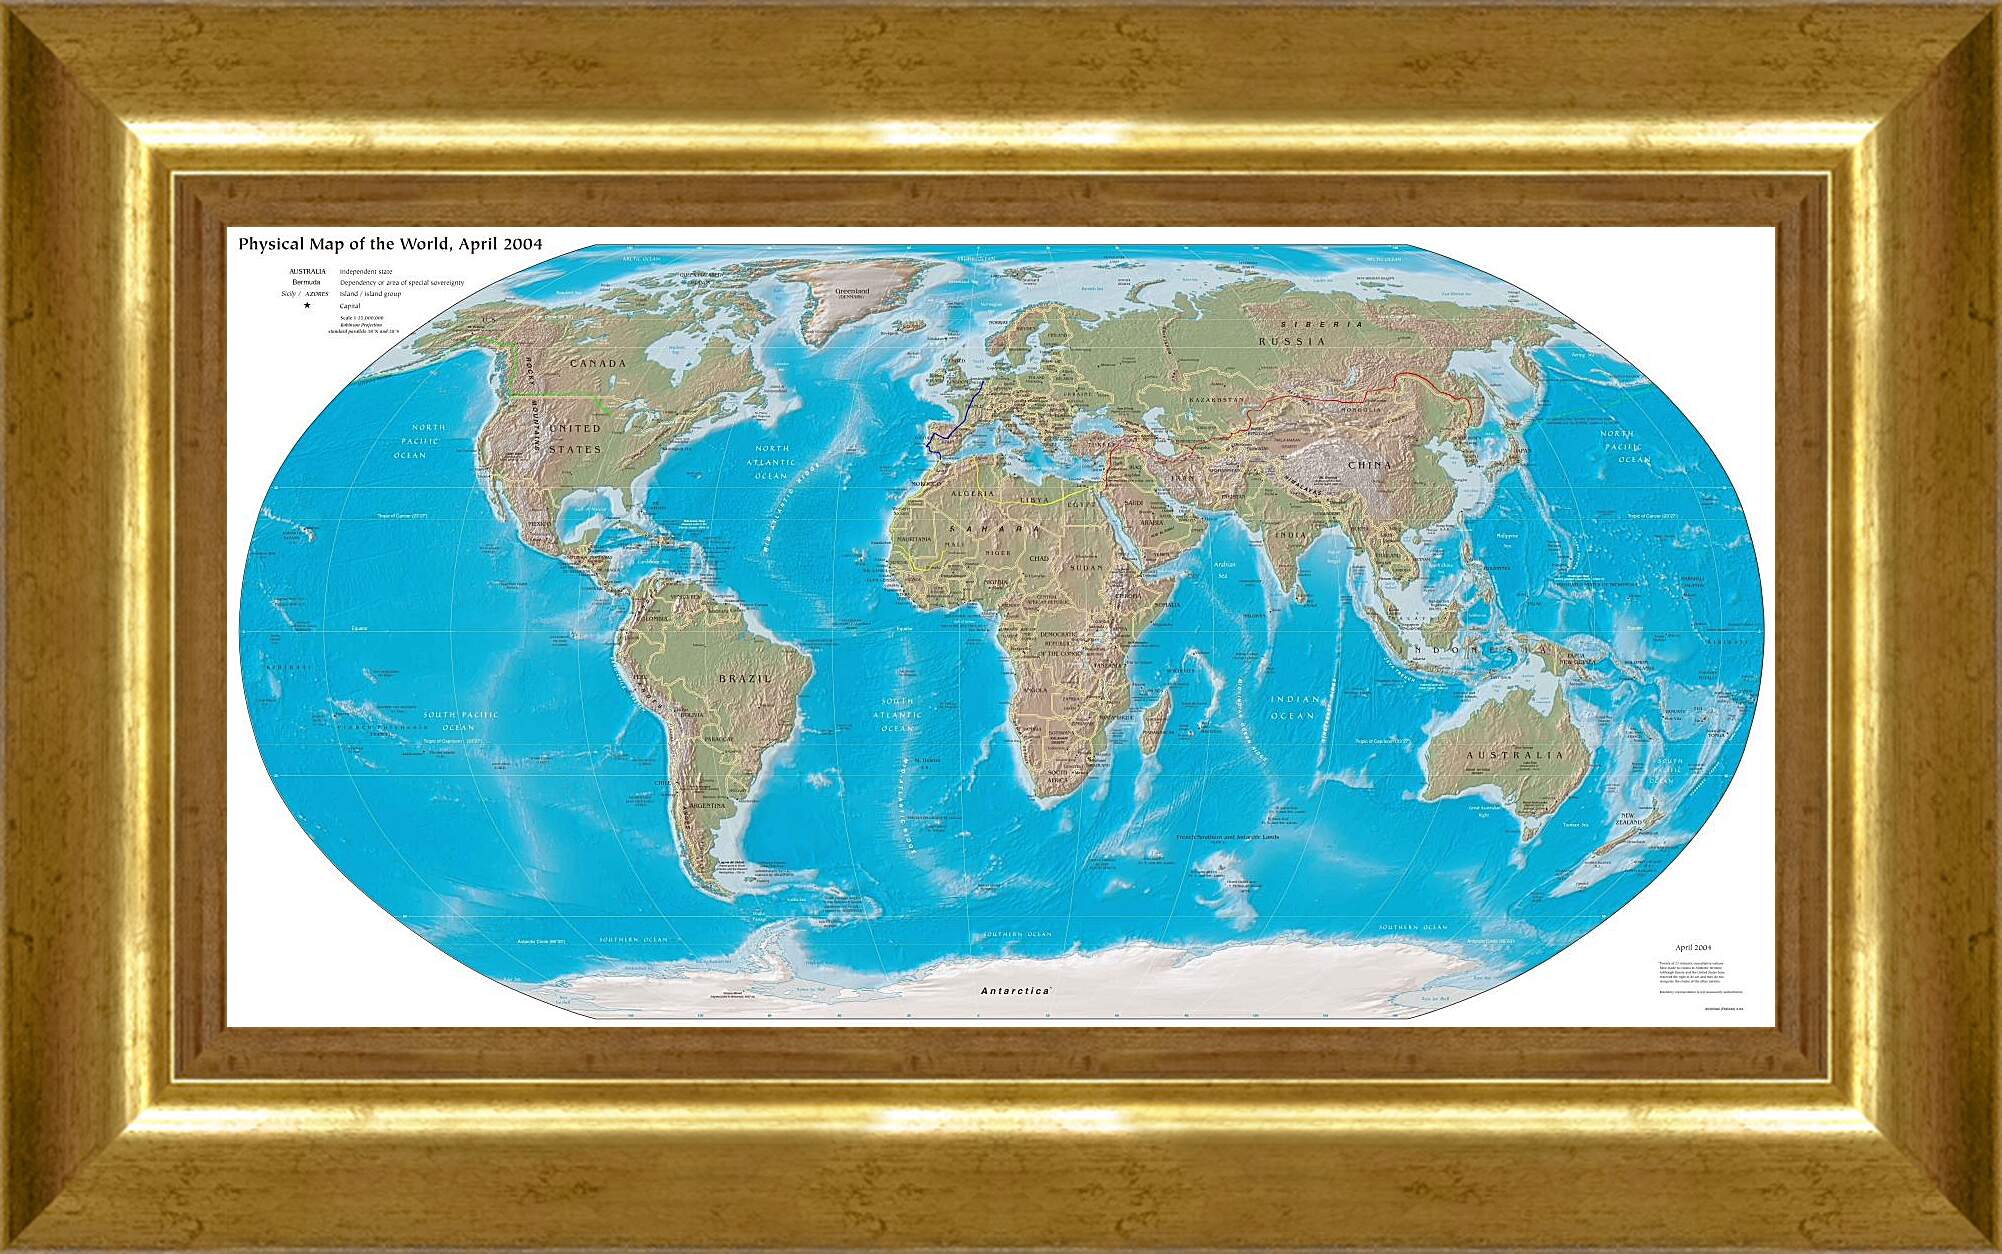 Картина в раме - Физическая карта мира, апрель 2004